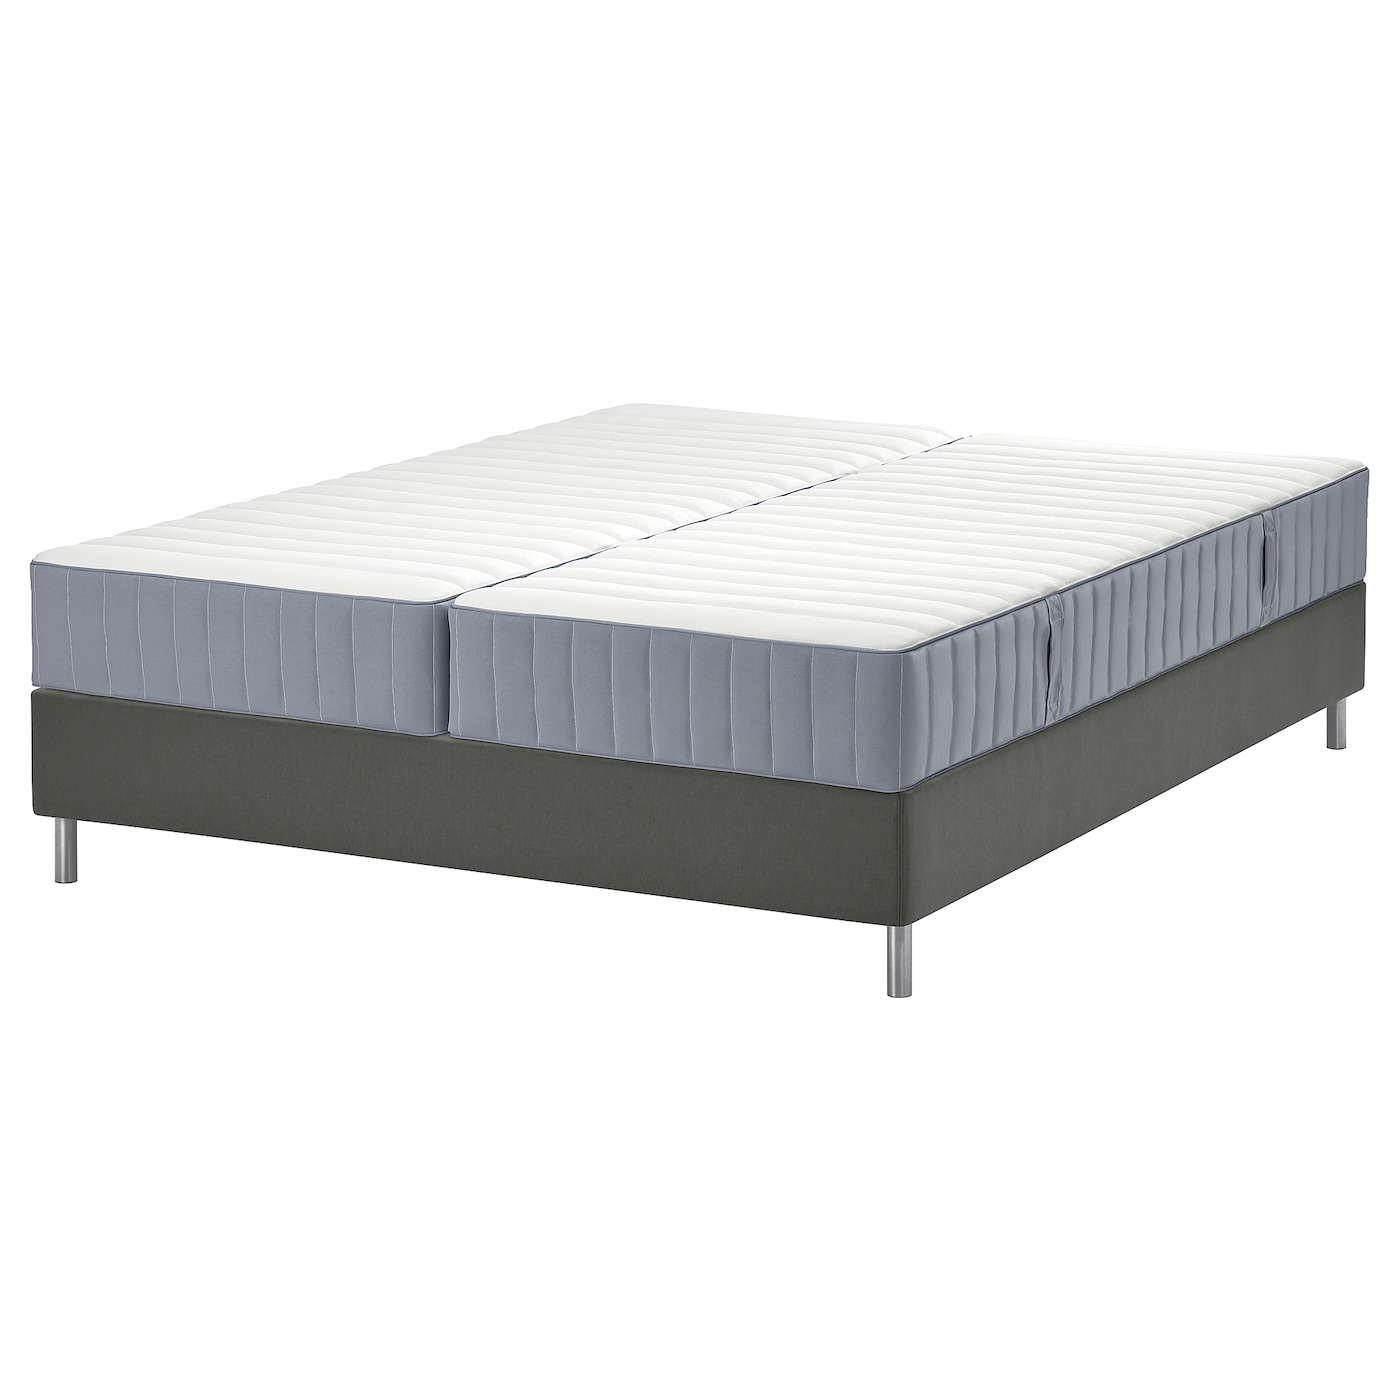 Кровать - LYNGÖR / LYNGОR IKEA/ ЛЮНГЕРЬ ИКЕА,  180х200 см, серый